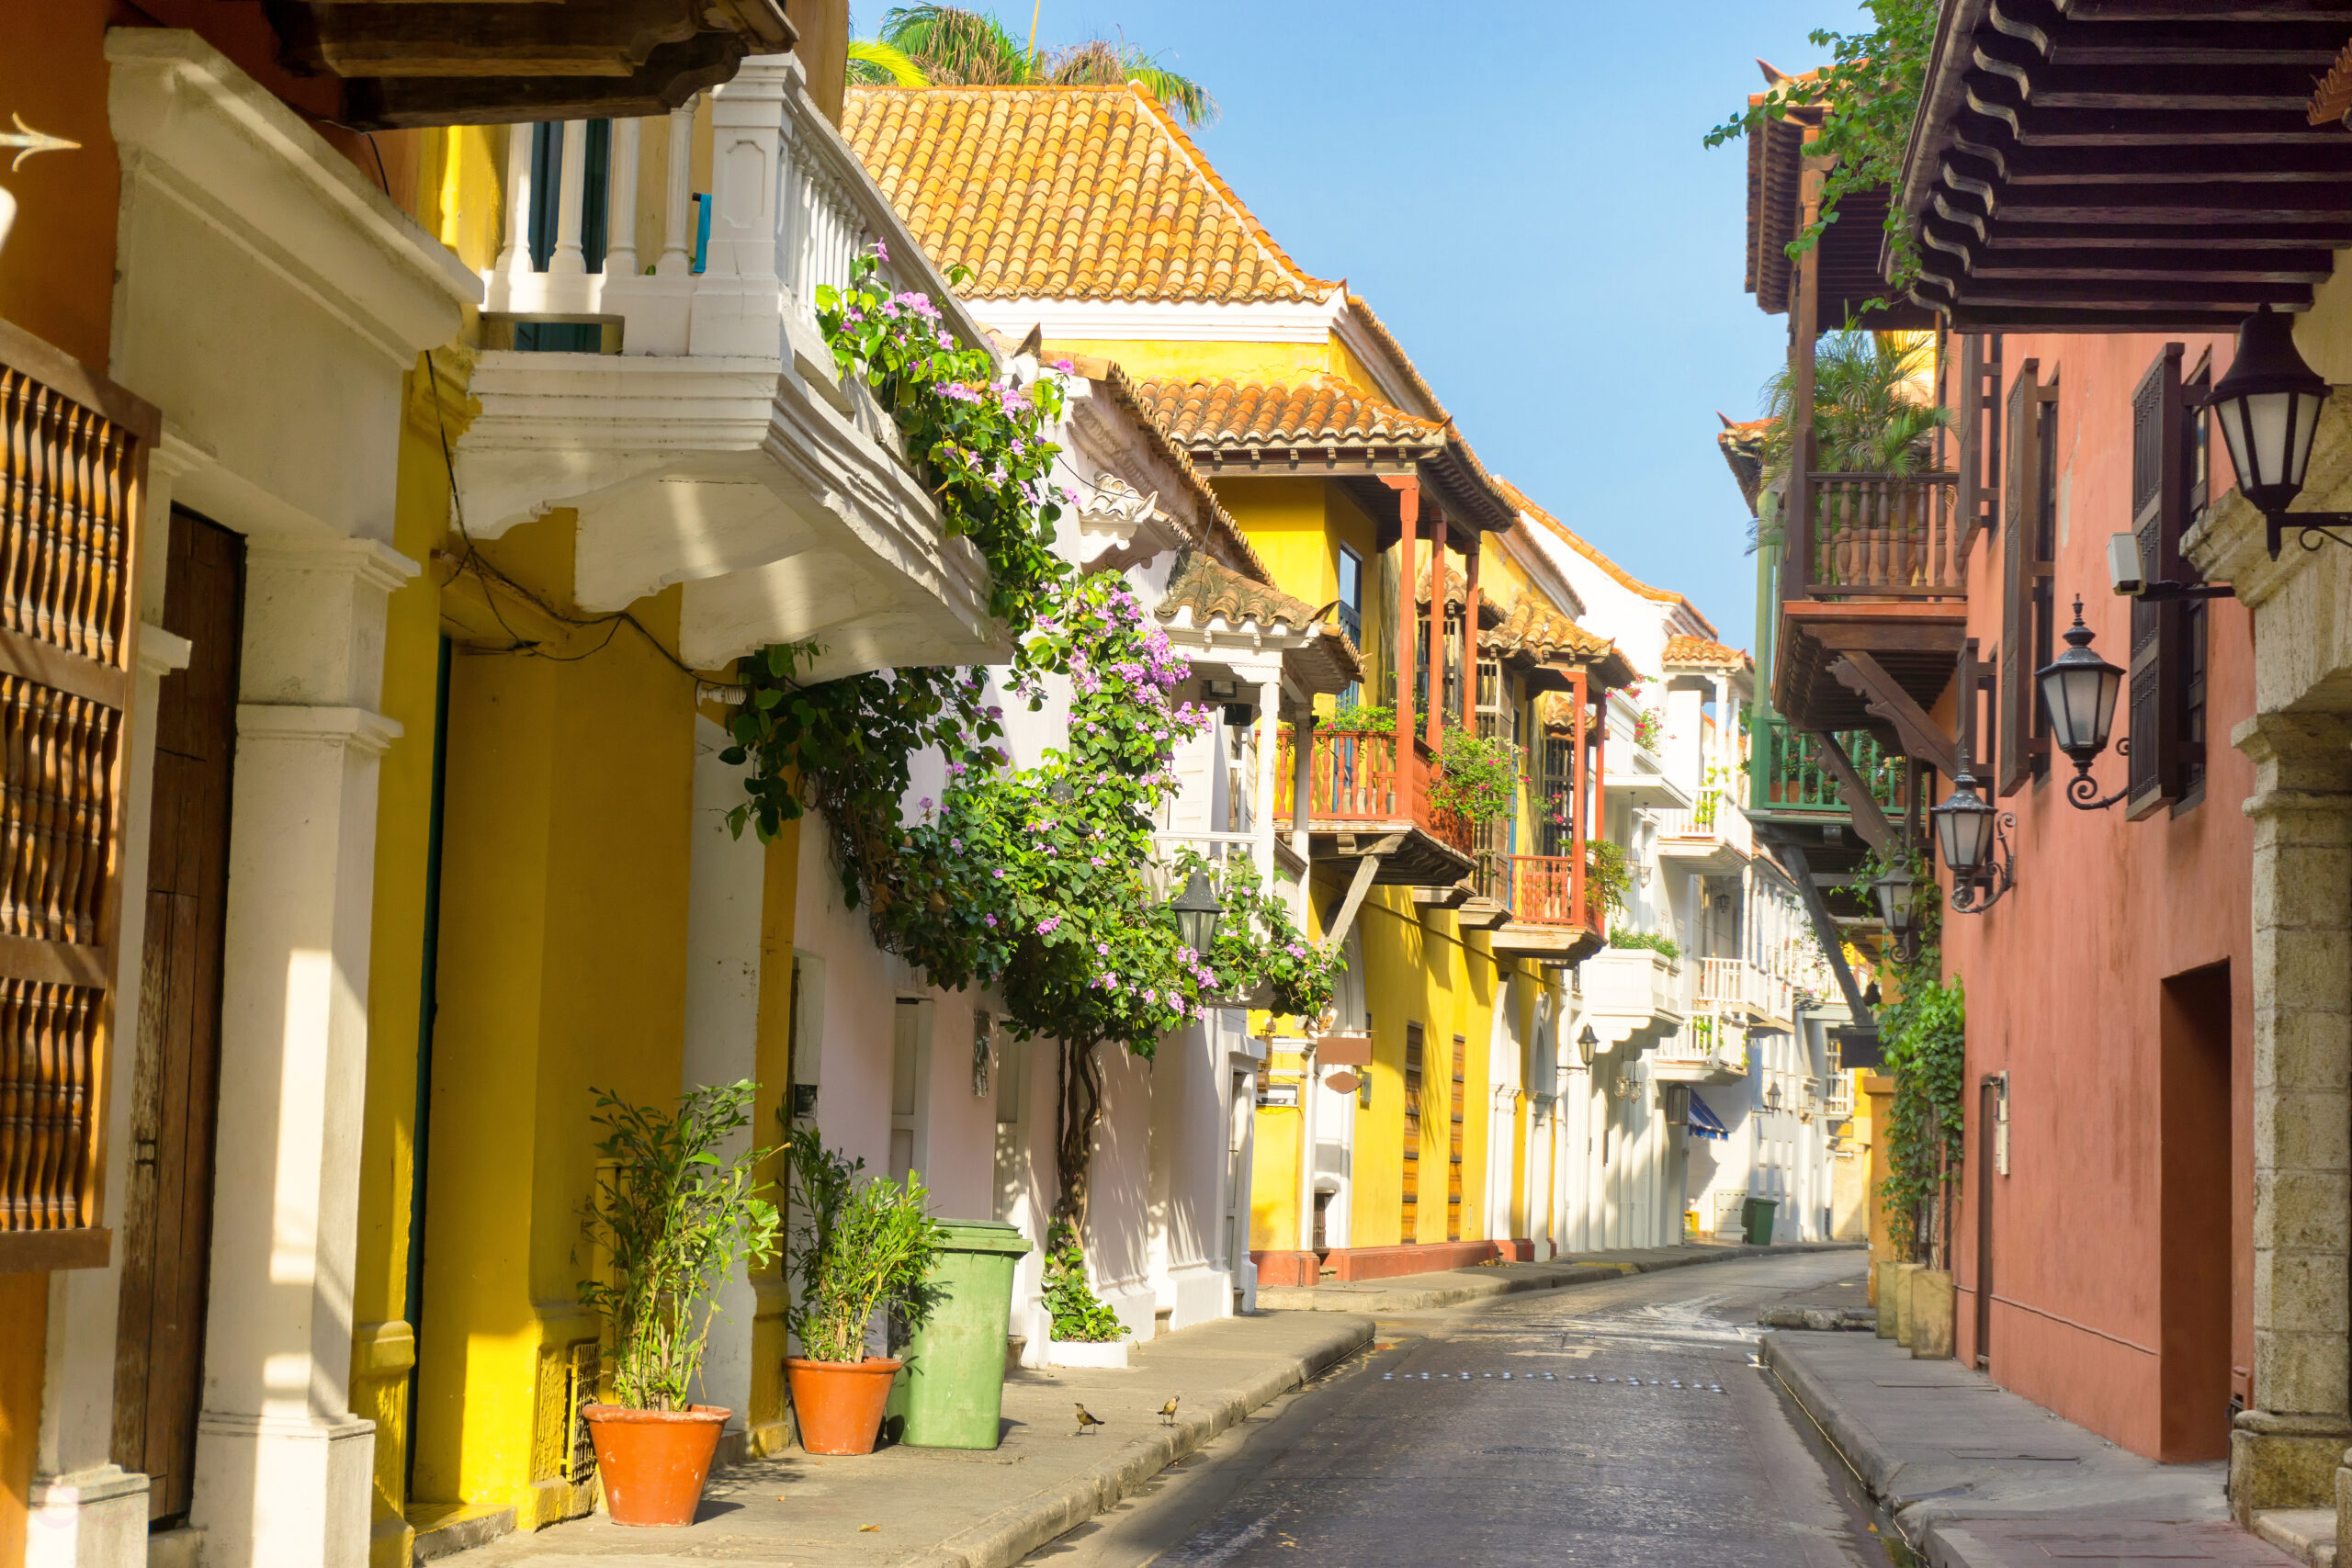 Colorful facades in Cartagena